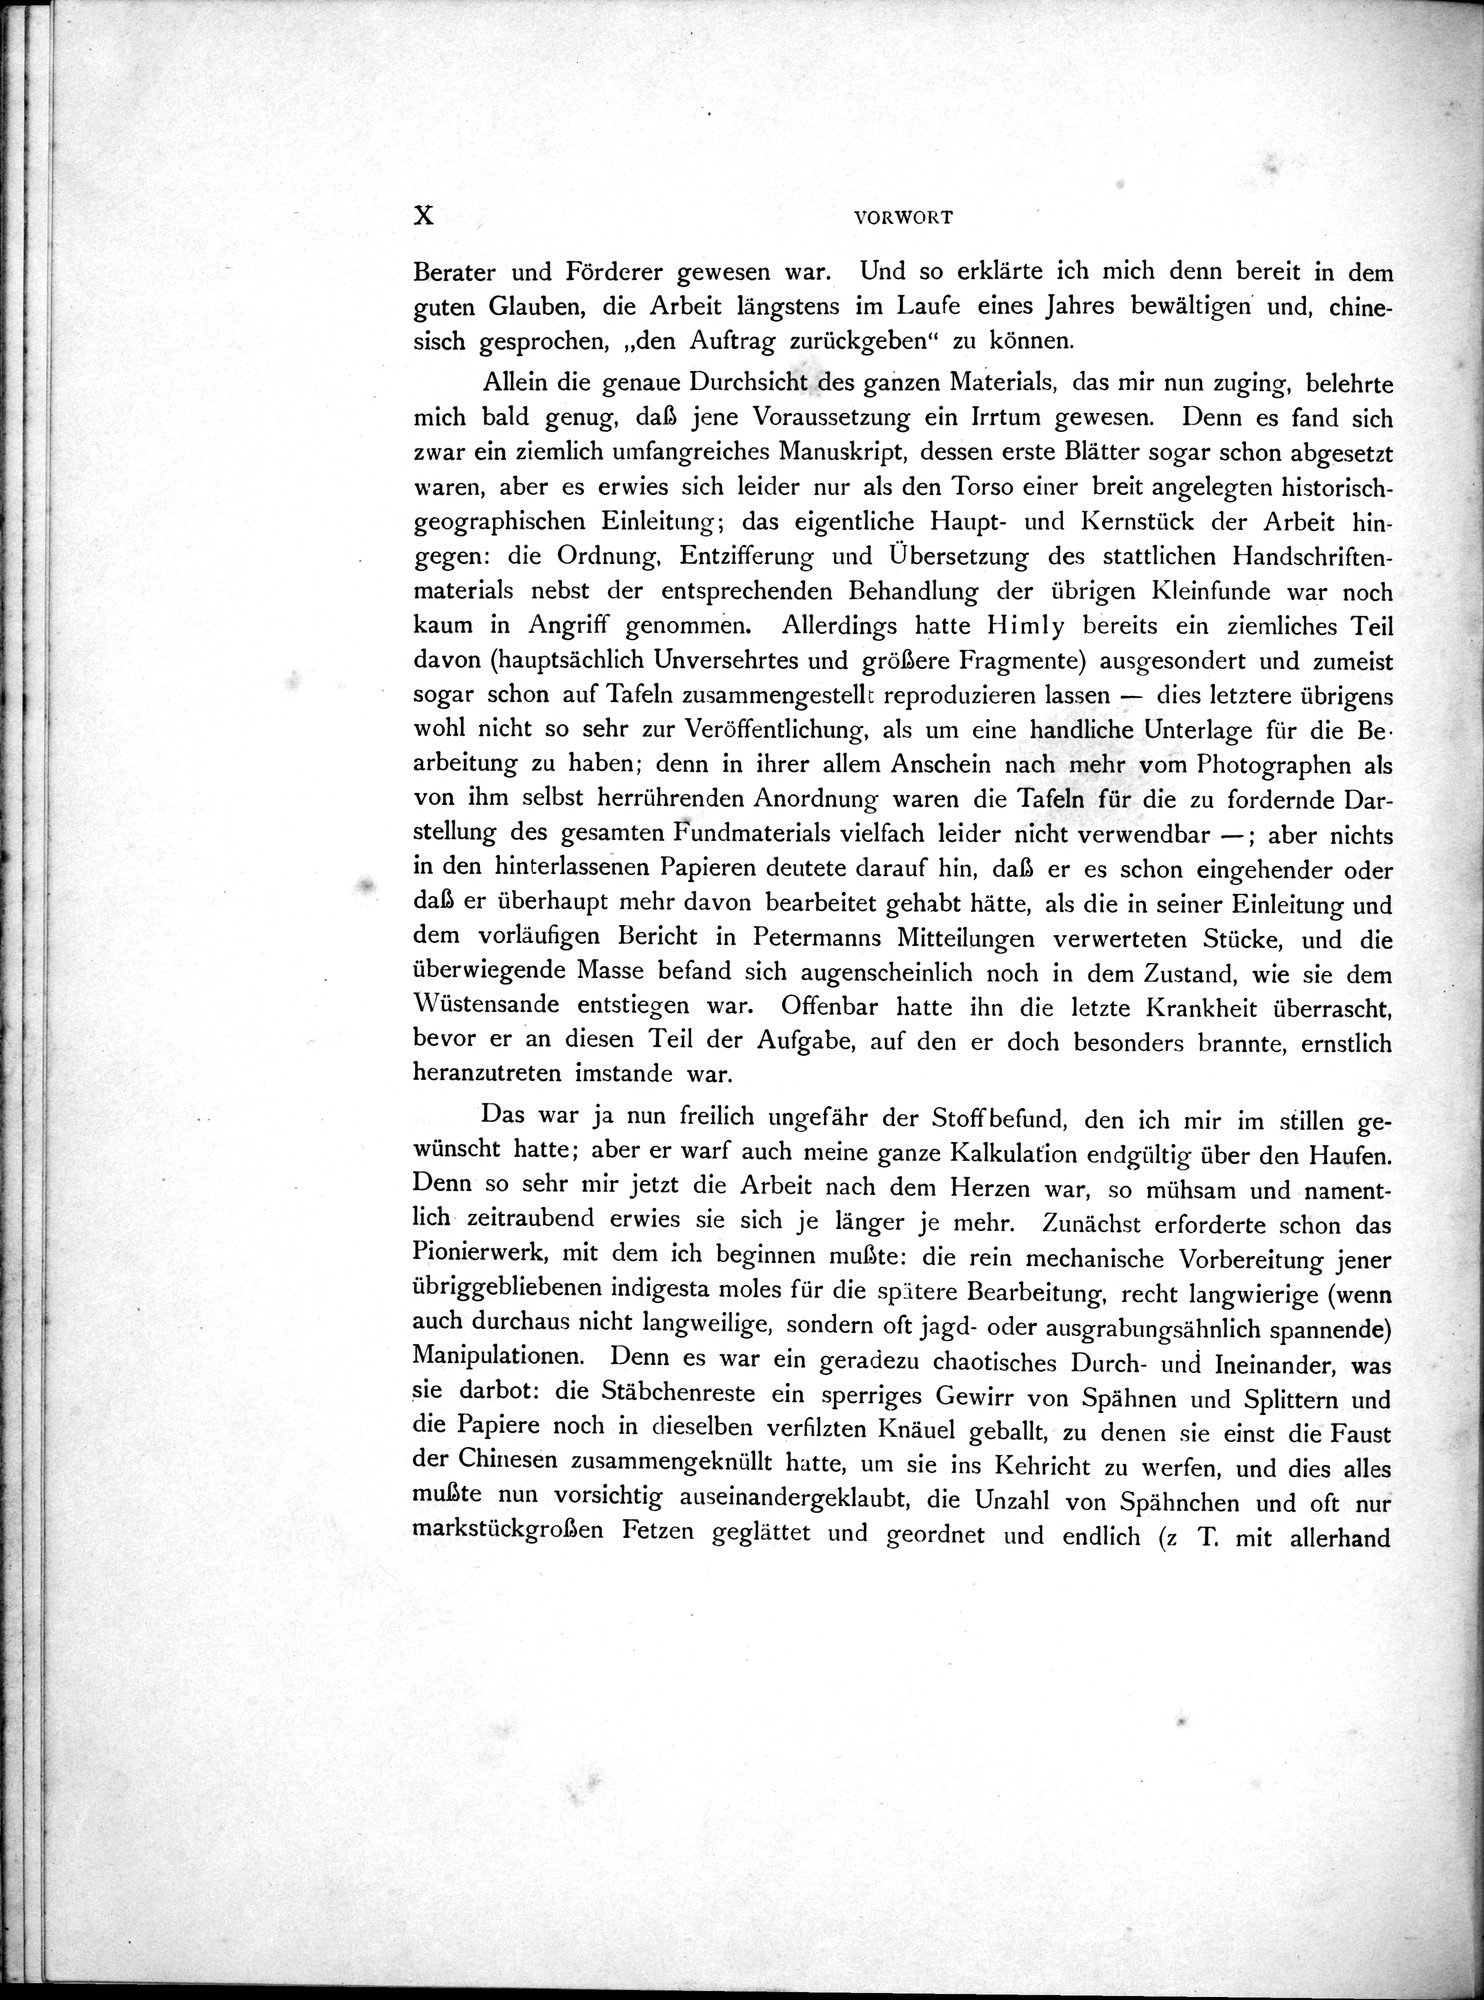 Die Chinesischen Handschriften- und sonstigen Kleinfunde Sven Hedins in Lou-lan : vol.1 / Page 18 (Grayscale High Resolution Image)